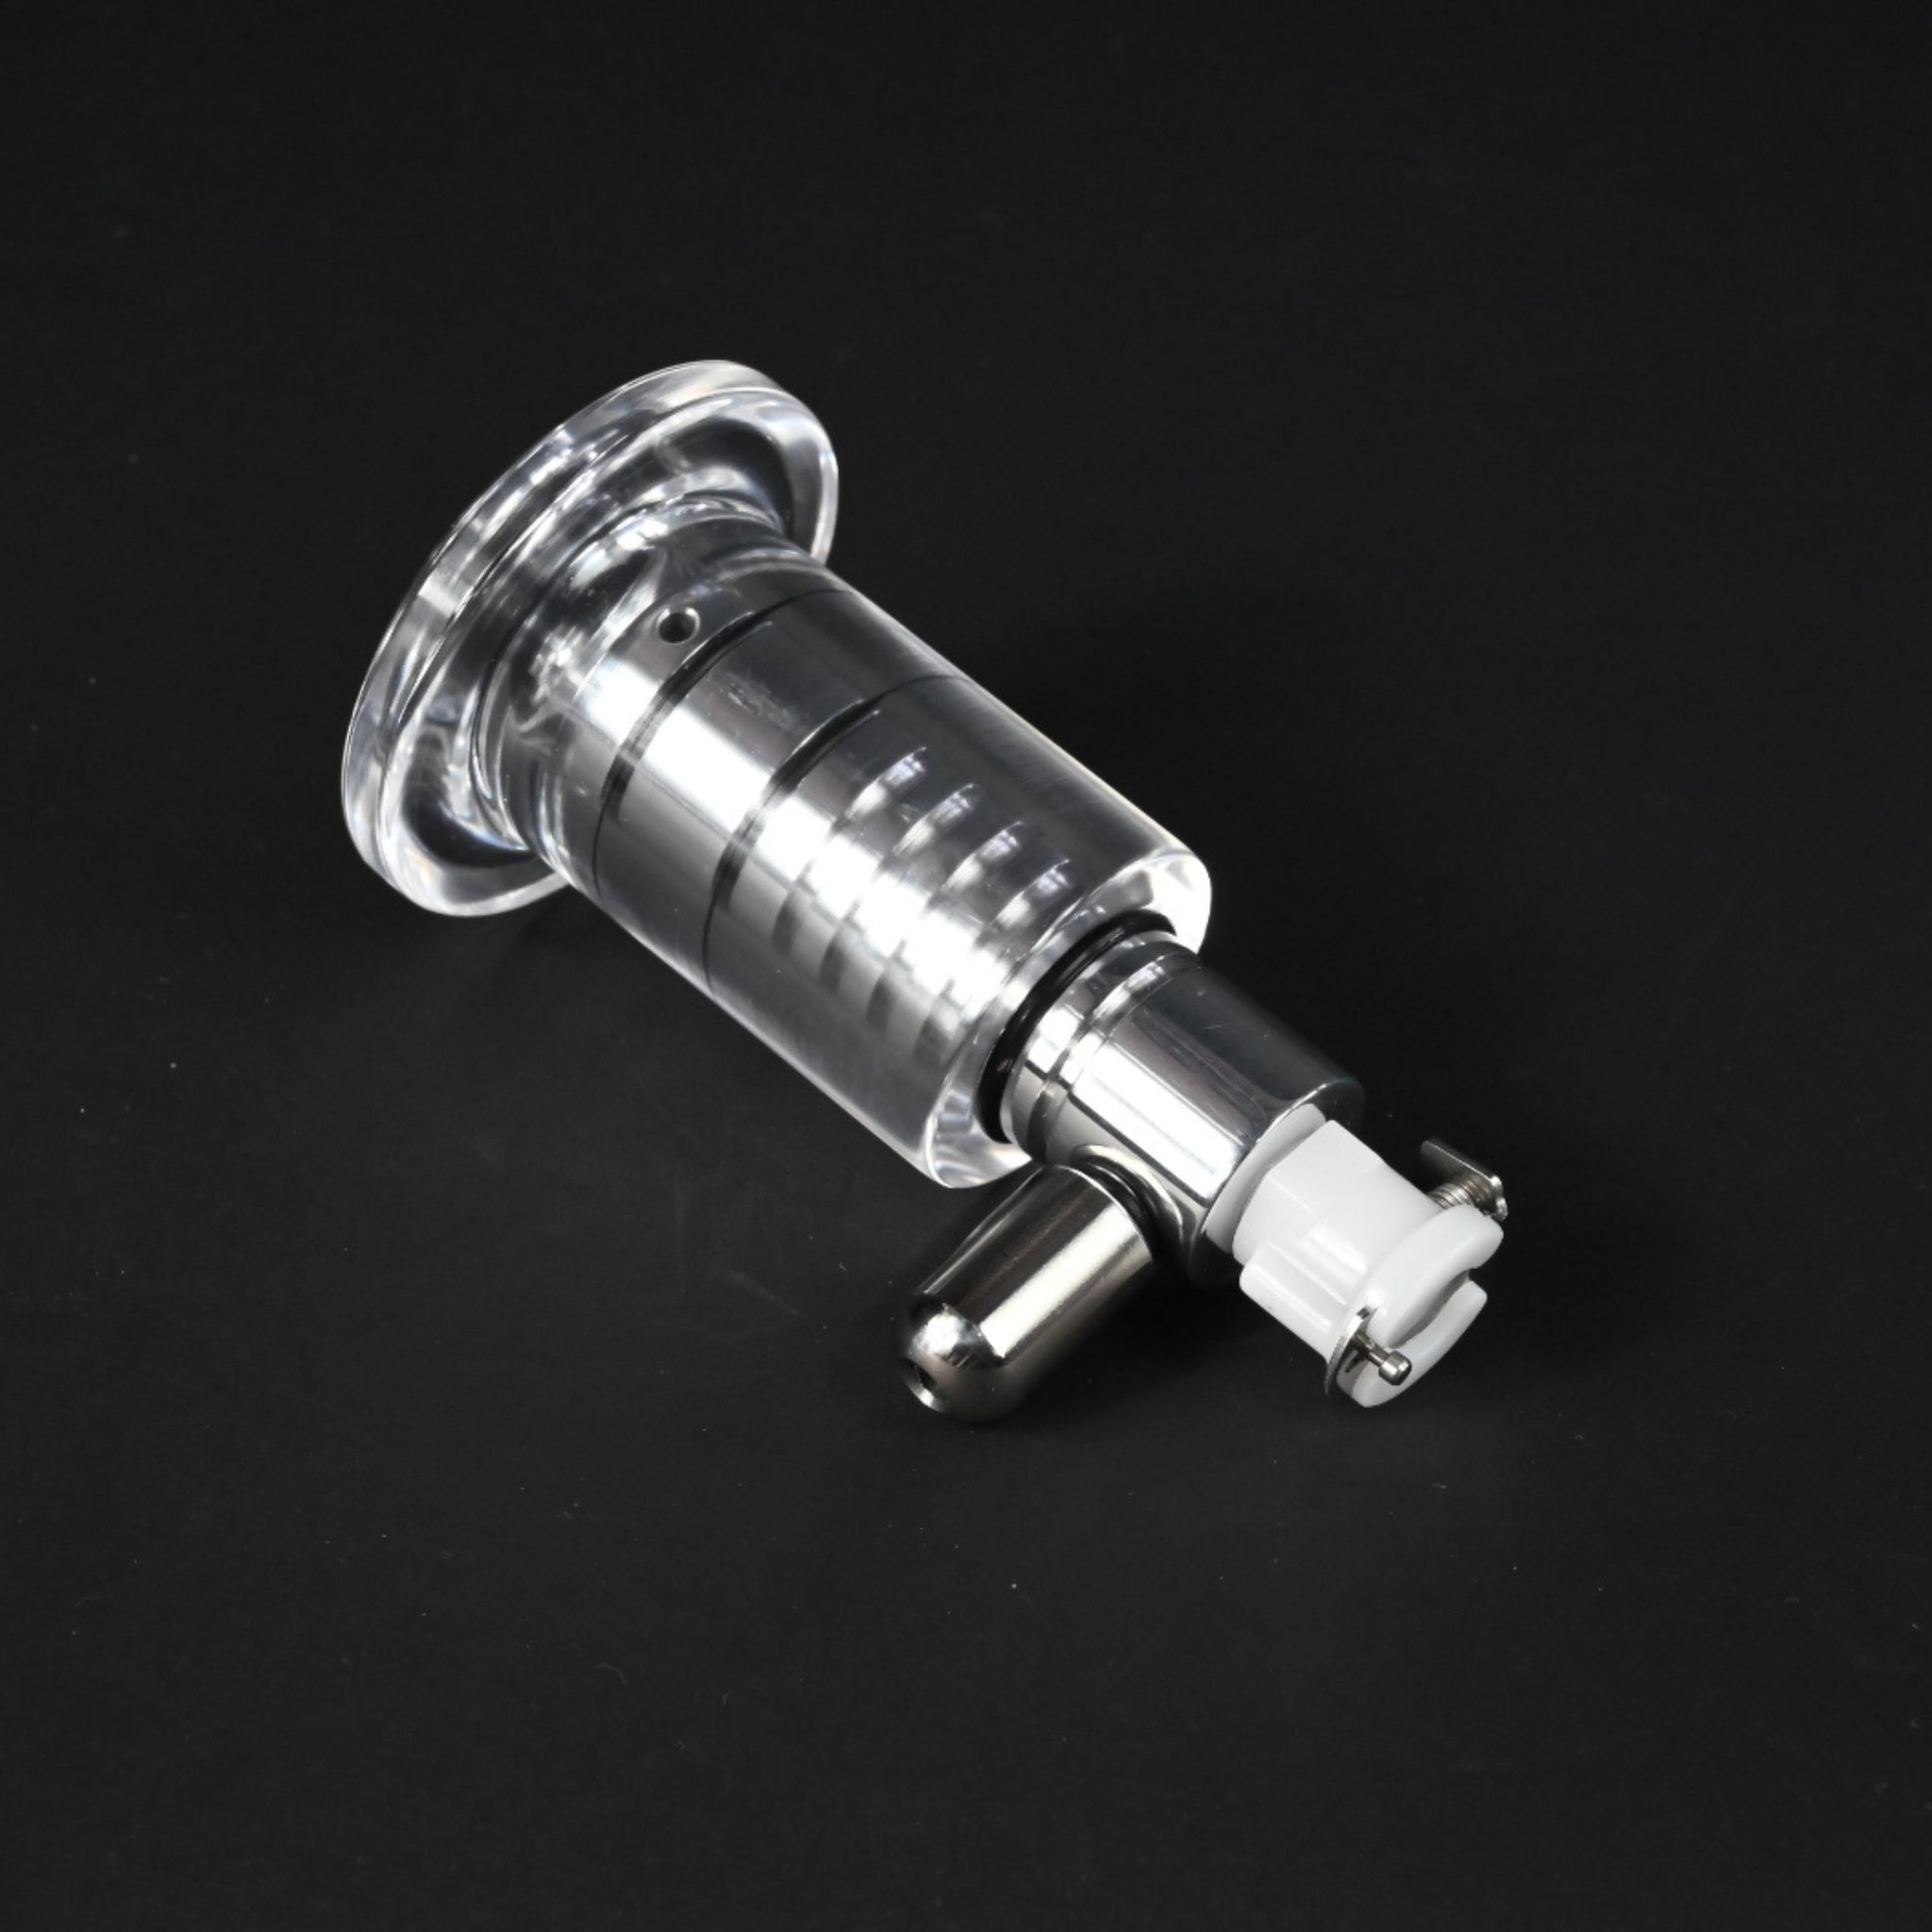 SeriousKit Hand Pump Clit Cylinder